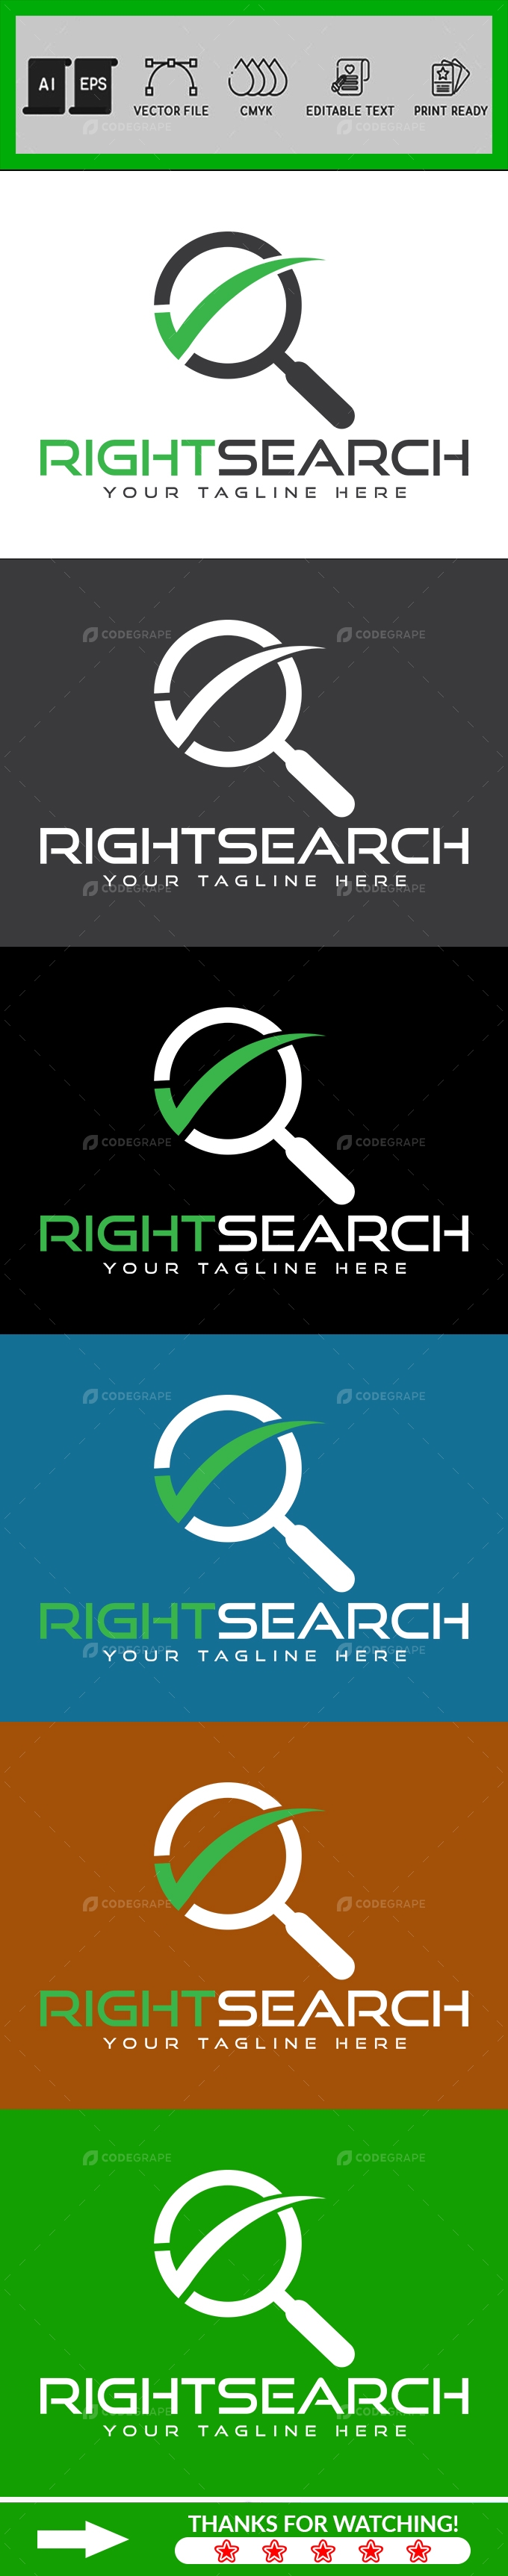 Corporate Right Search Logo Design Template